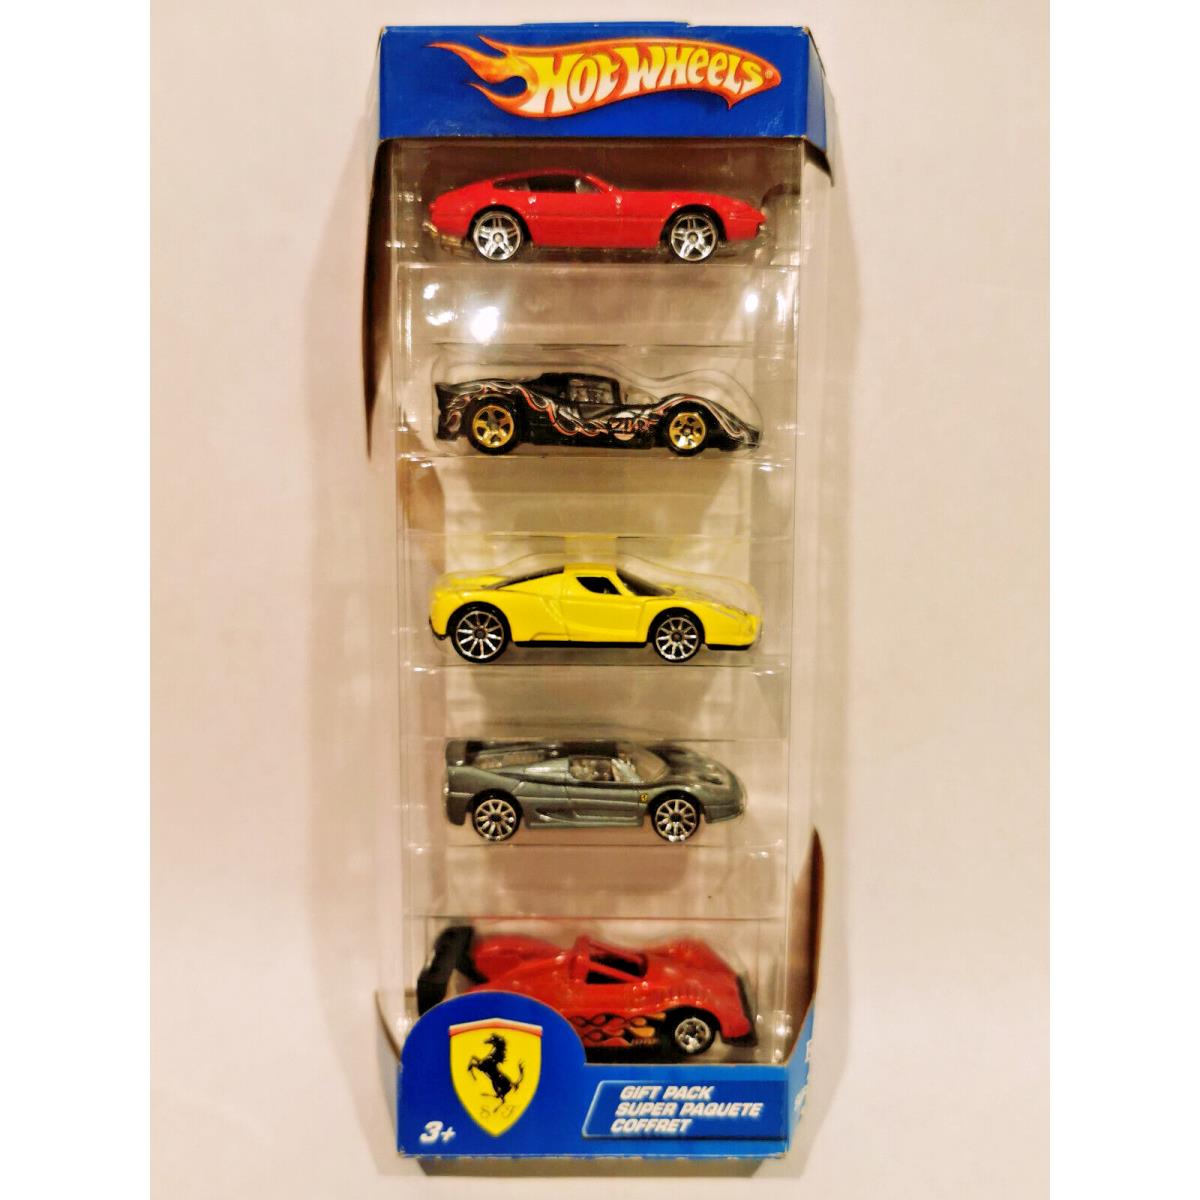 Mattel 2005 Hot Wheels Ferrari Gift Pack of 5 Cars